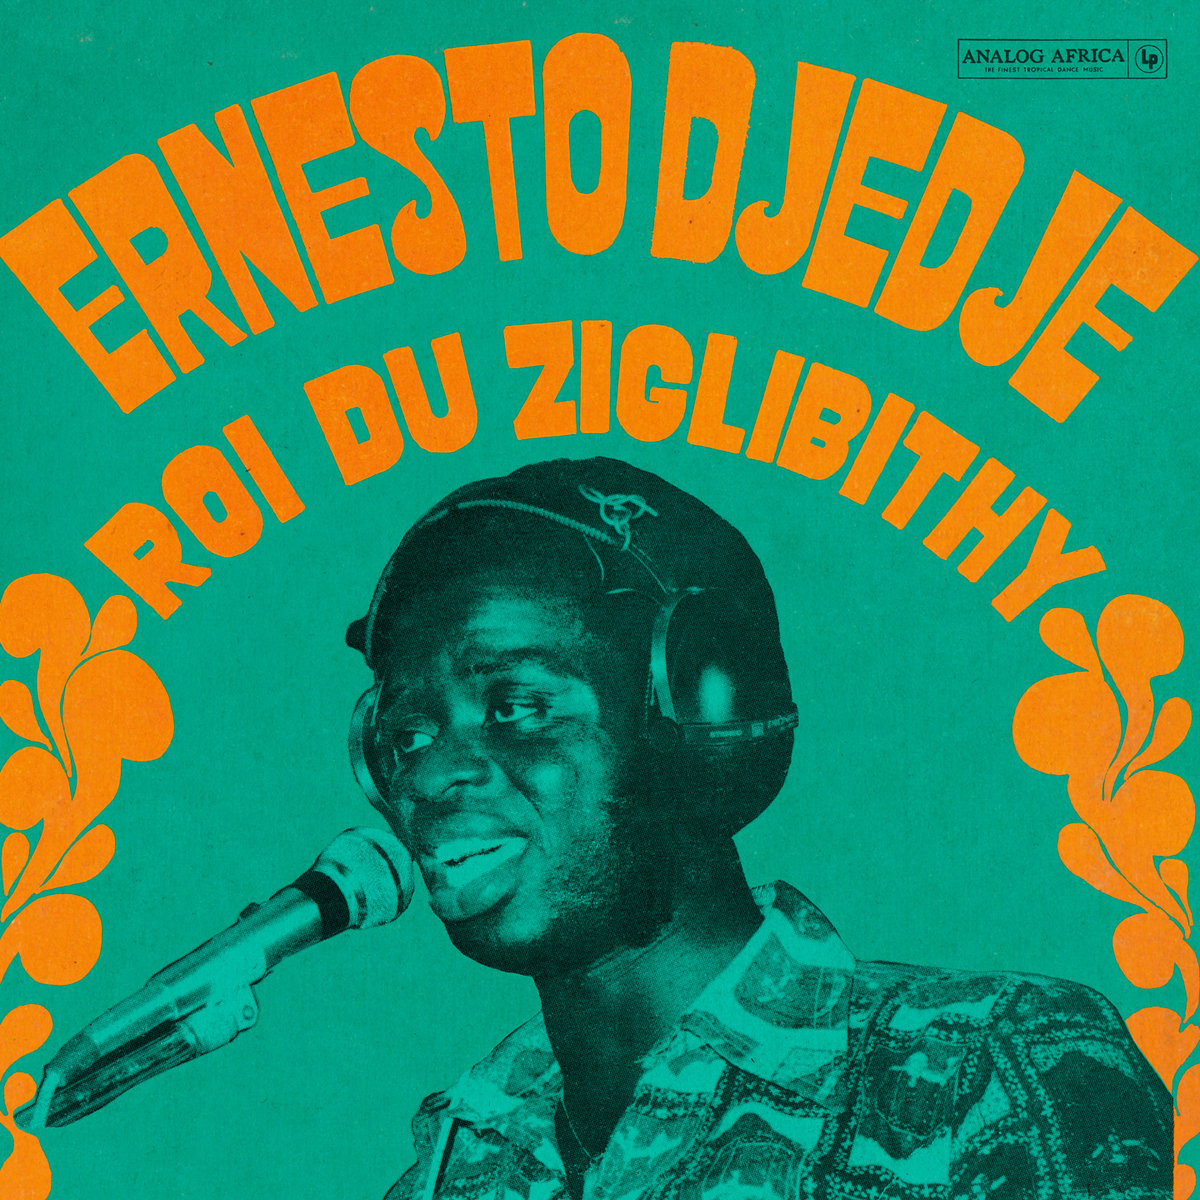 Ernesto Djédjé - Roi Du Ziglibithy (Limited Dance Edition Nr. 15) par Ernesto Djédjé VINYL 33 TOURS DISQUE VINYLE LP PARIS MONTPELLIER GROUND ZERO PLATINE PRO-JECT ALBUM TOURNE-DISQUE MUSICAL FIDELITY KANTU YU BRINGHS ORTOFON 45 TOURS SINGLES ALBUM ACHETER UNE PLATINE VINYLS BOUTIQUE PHYSIQUE DISQUAIRE MAGASIN CENTRE VILLE